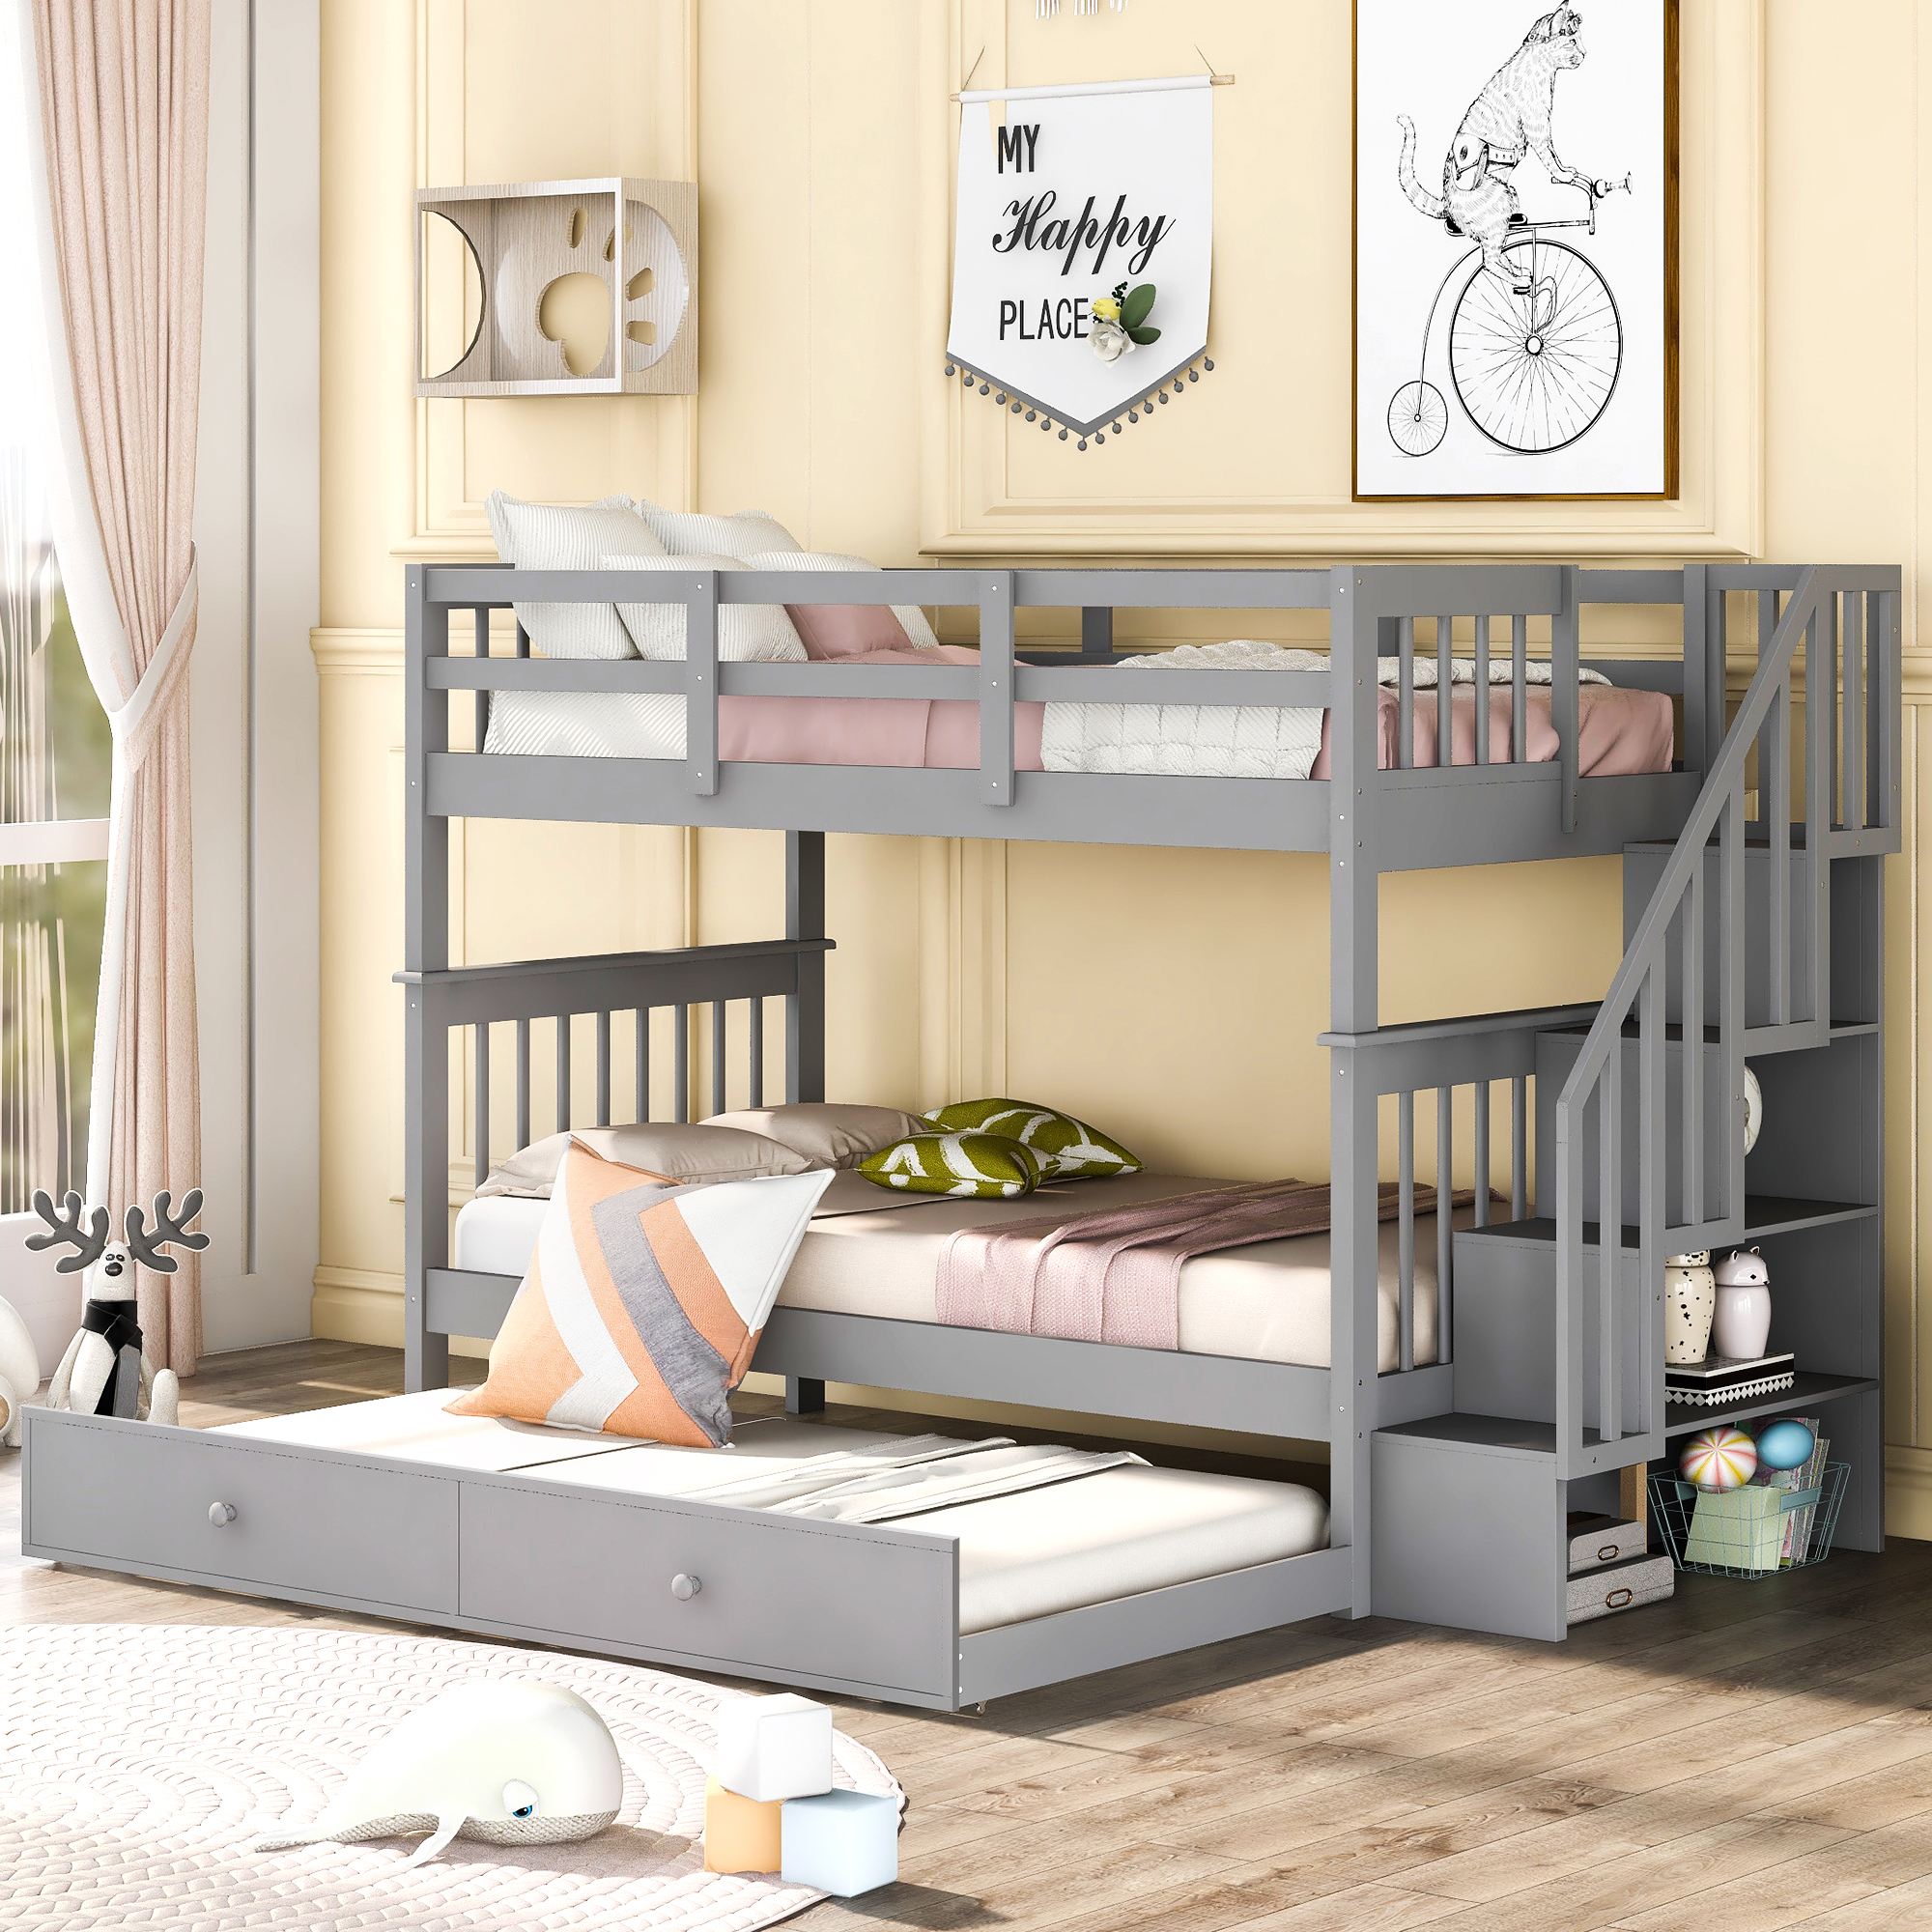 Details about   Metal Floor Bunk Bed Twin Over Full Bunk Beds Adult Children Bedroom Dorm 